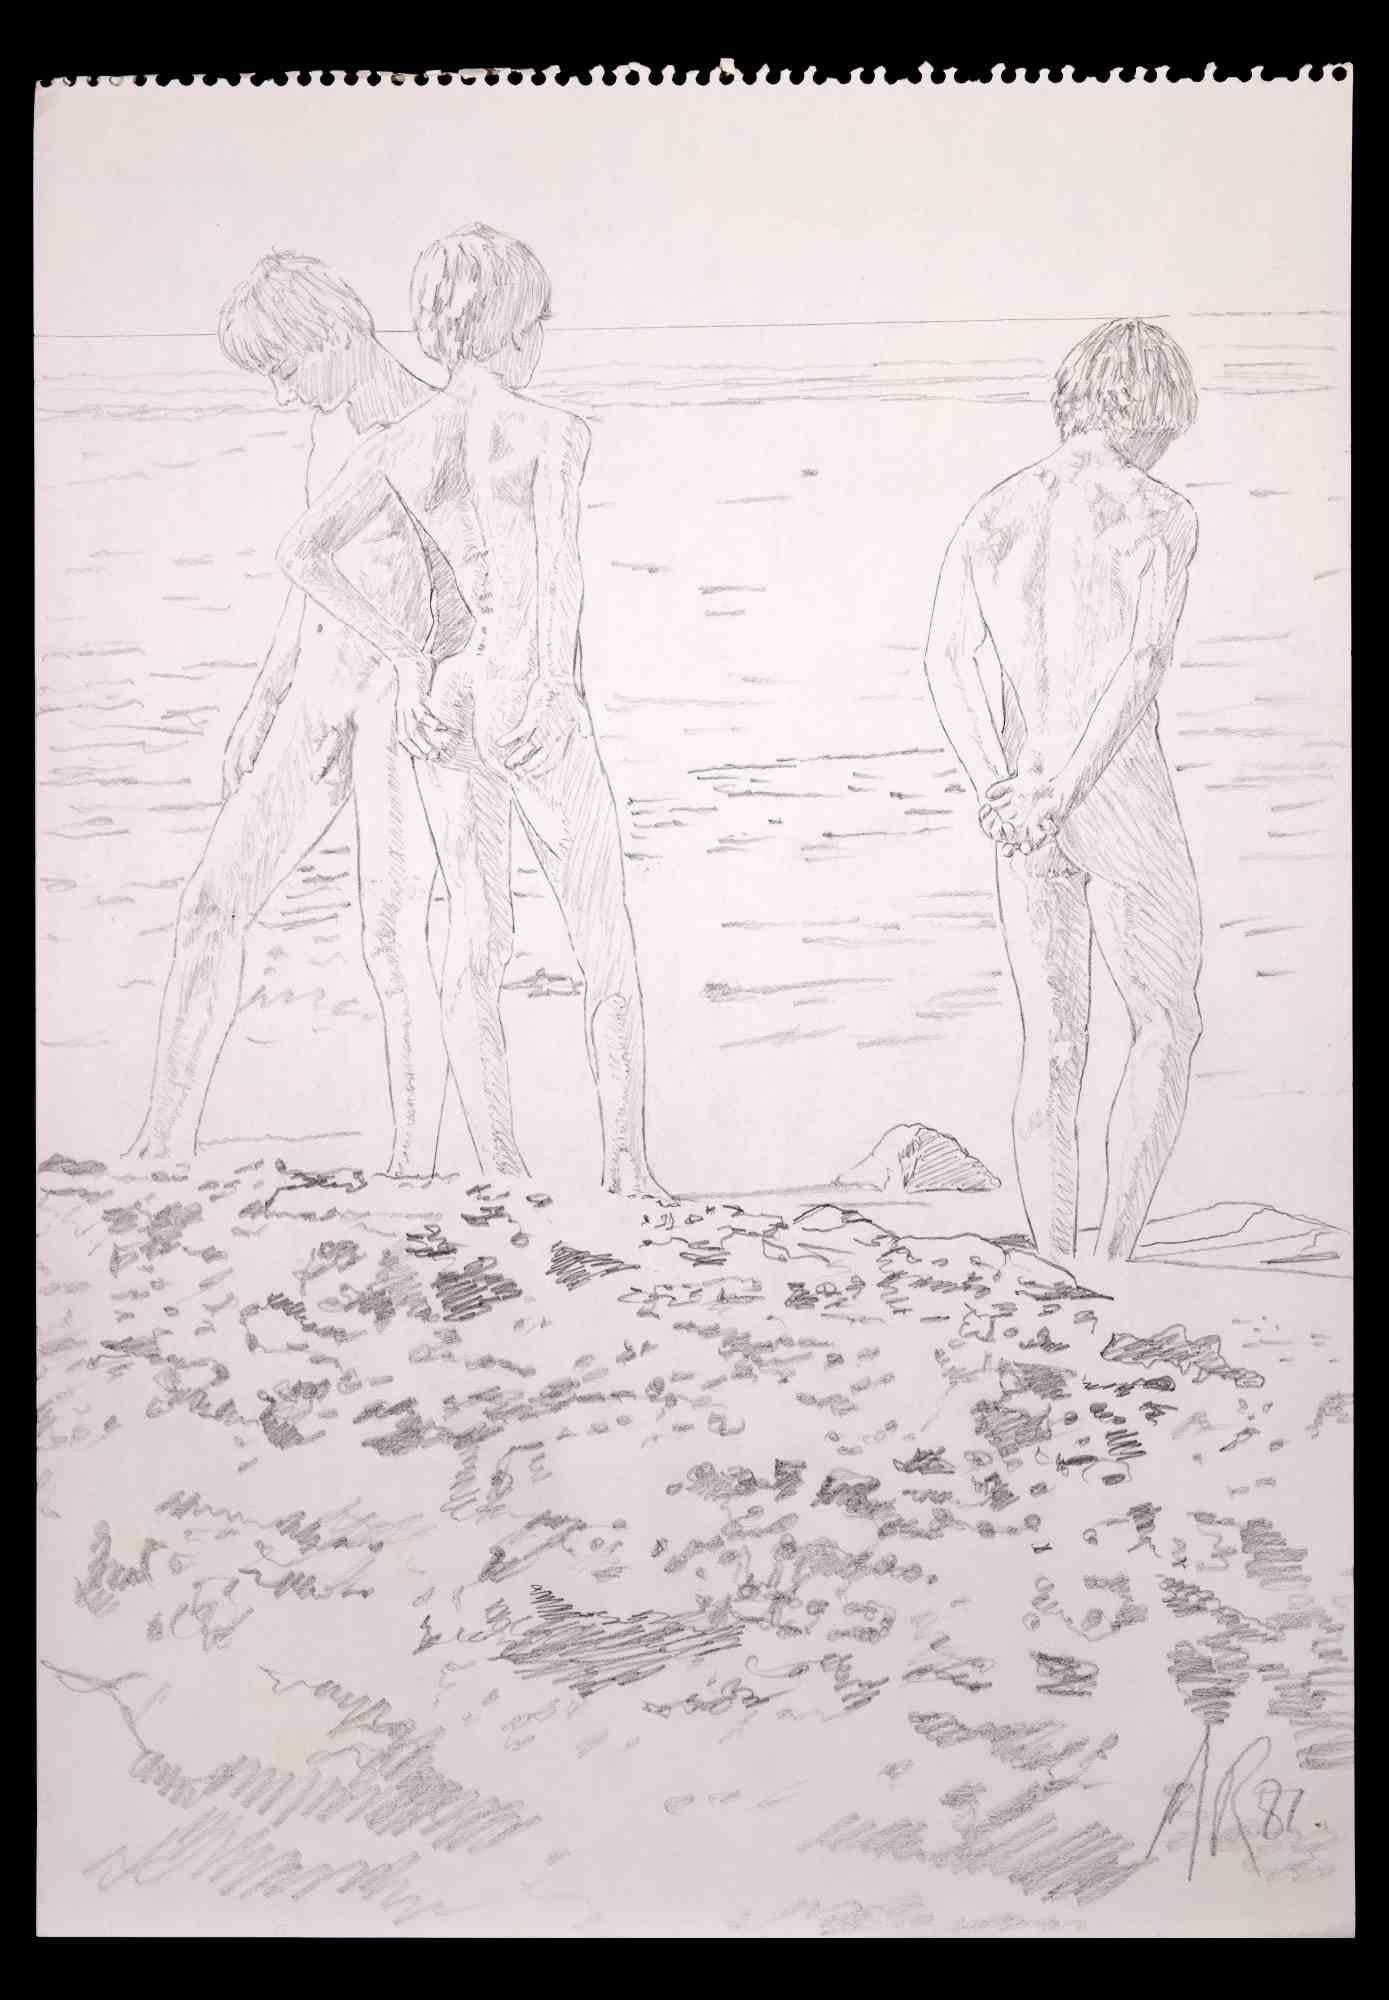 Teens at the Beach – Originalzeichnung von Anthony Roaland, 1982